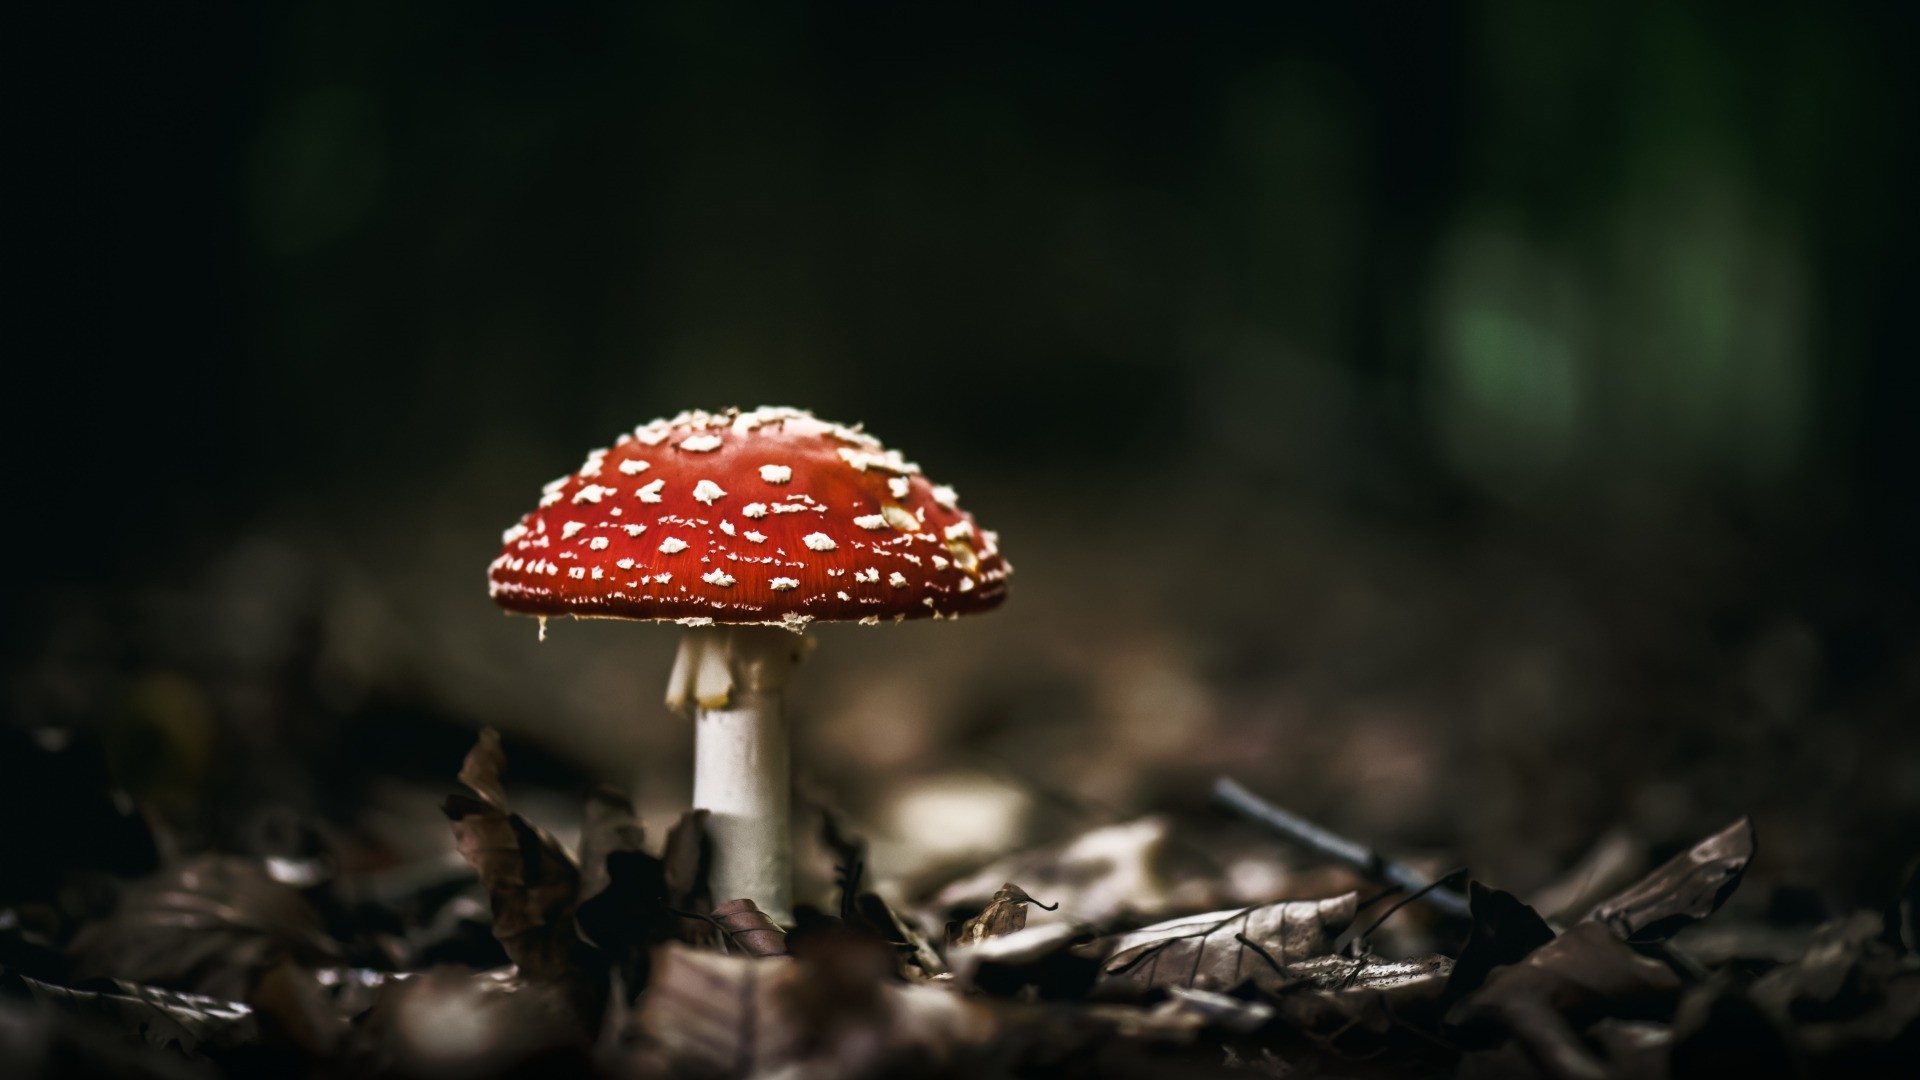 Mushroom HD Wallpaper